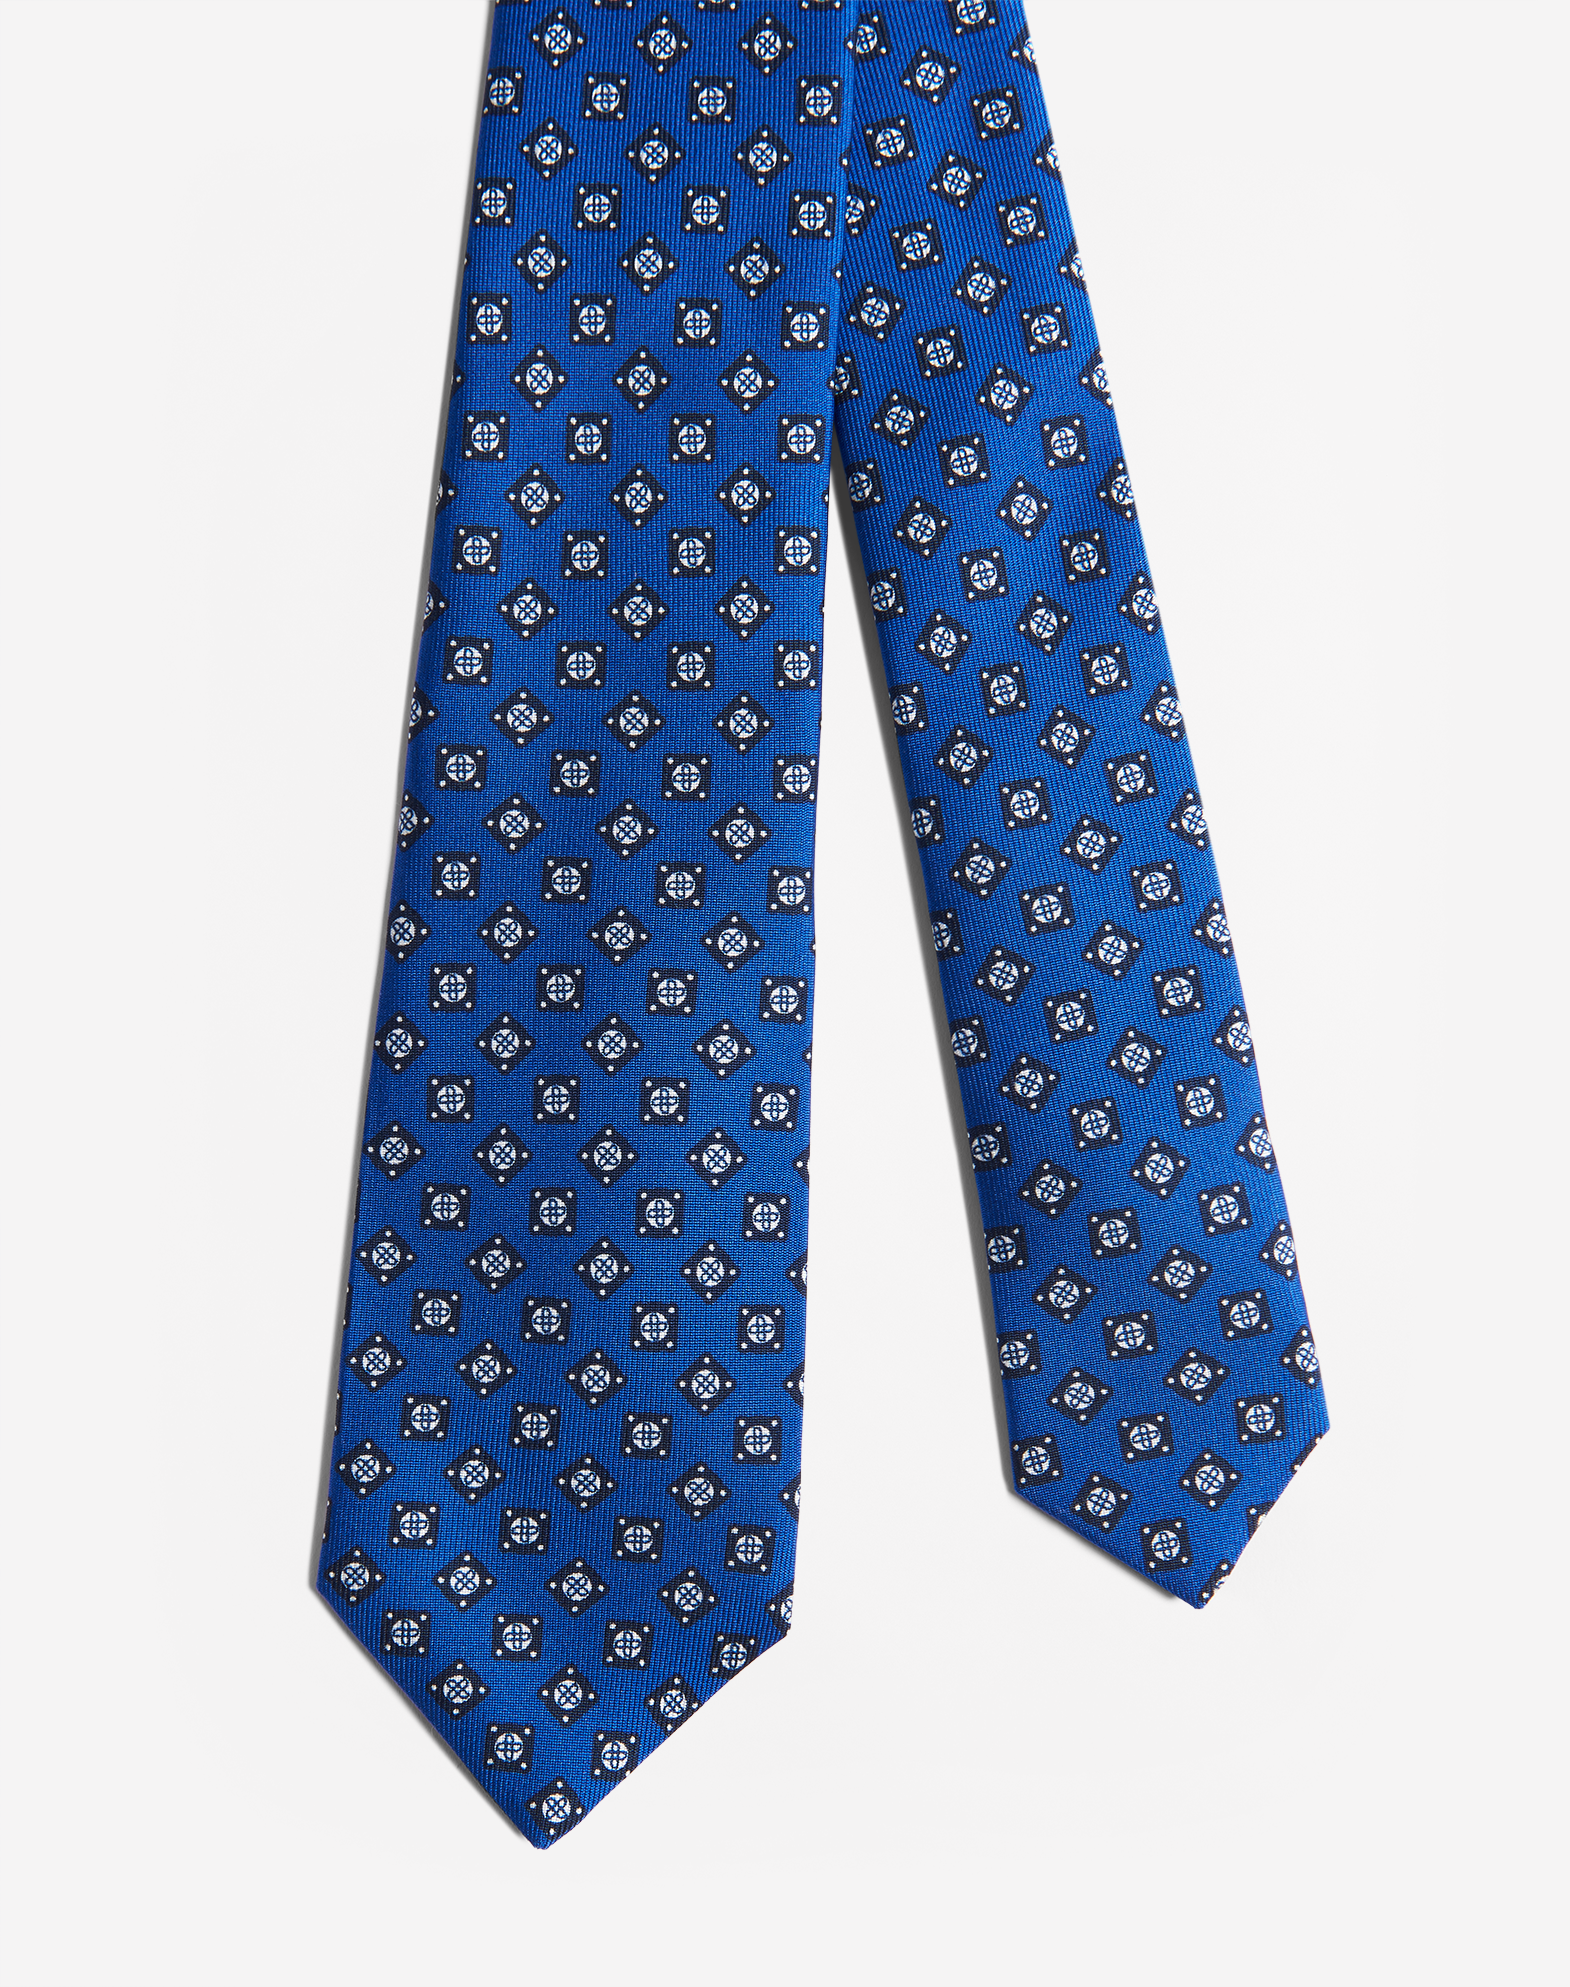 Dunhill Men's Cravate